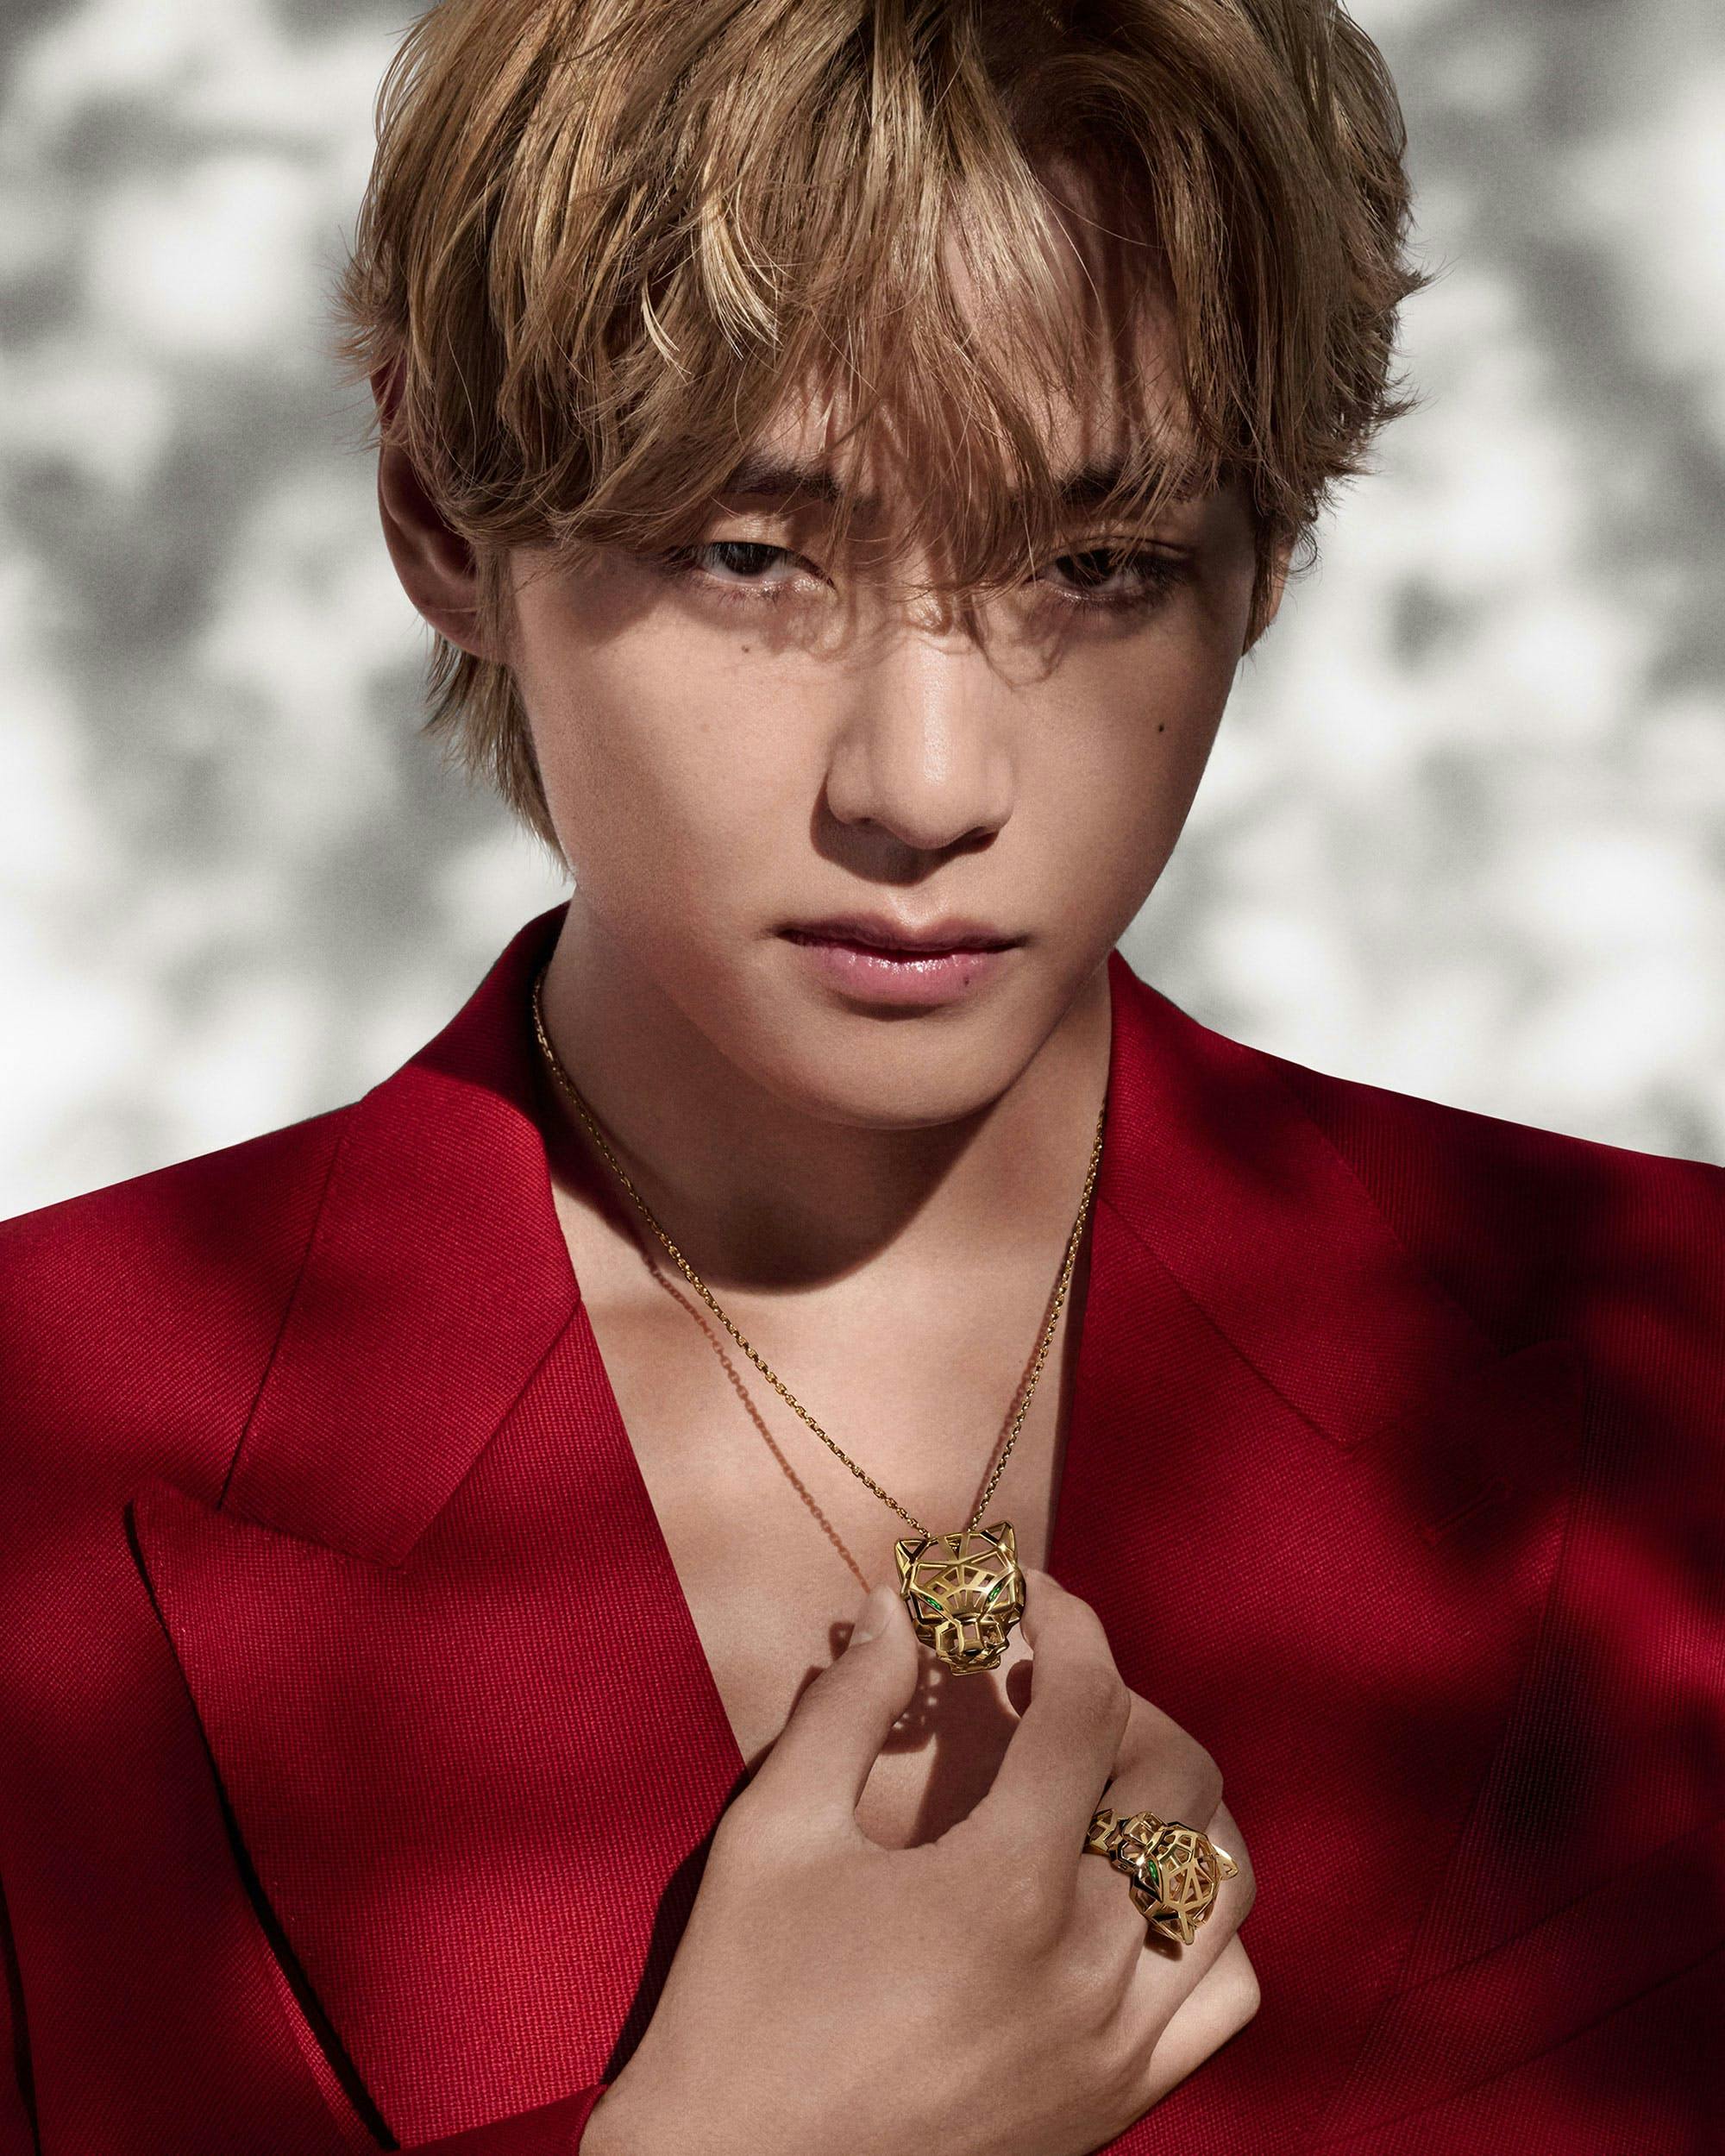 BTS' V newest Cartier brand ambassador